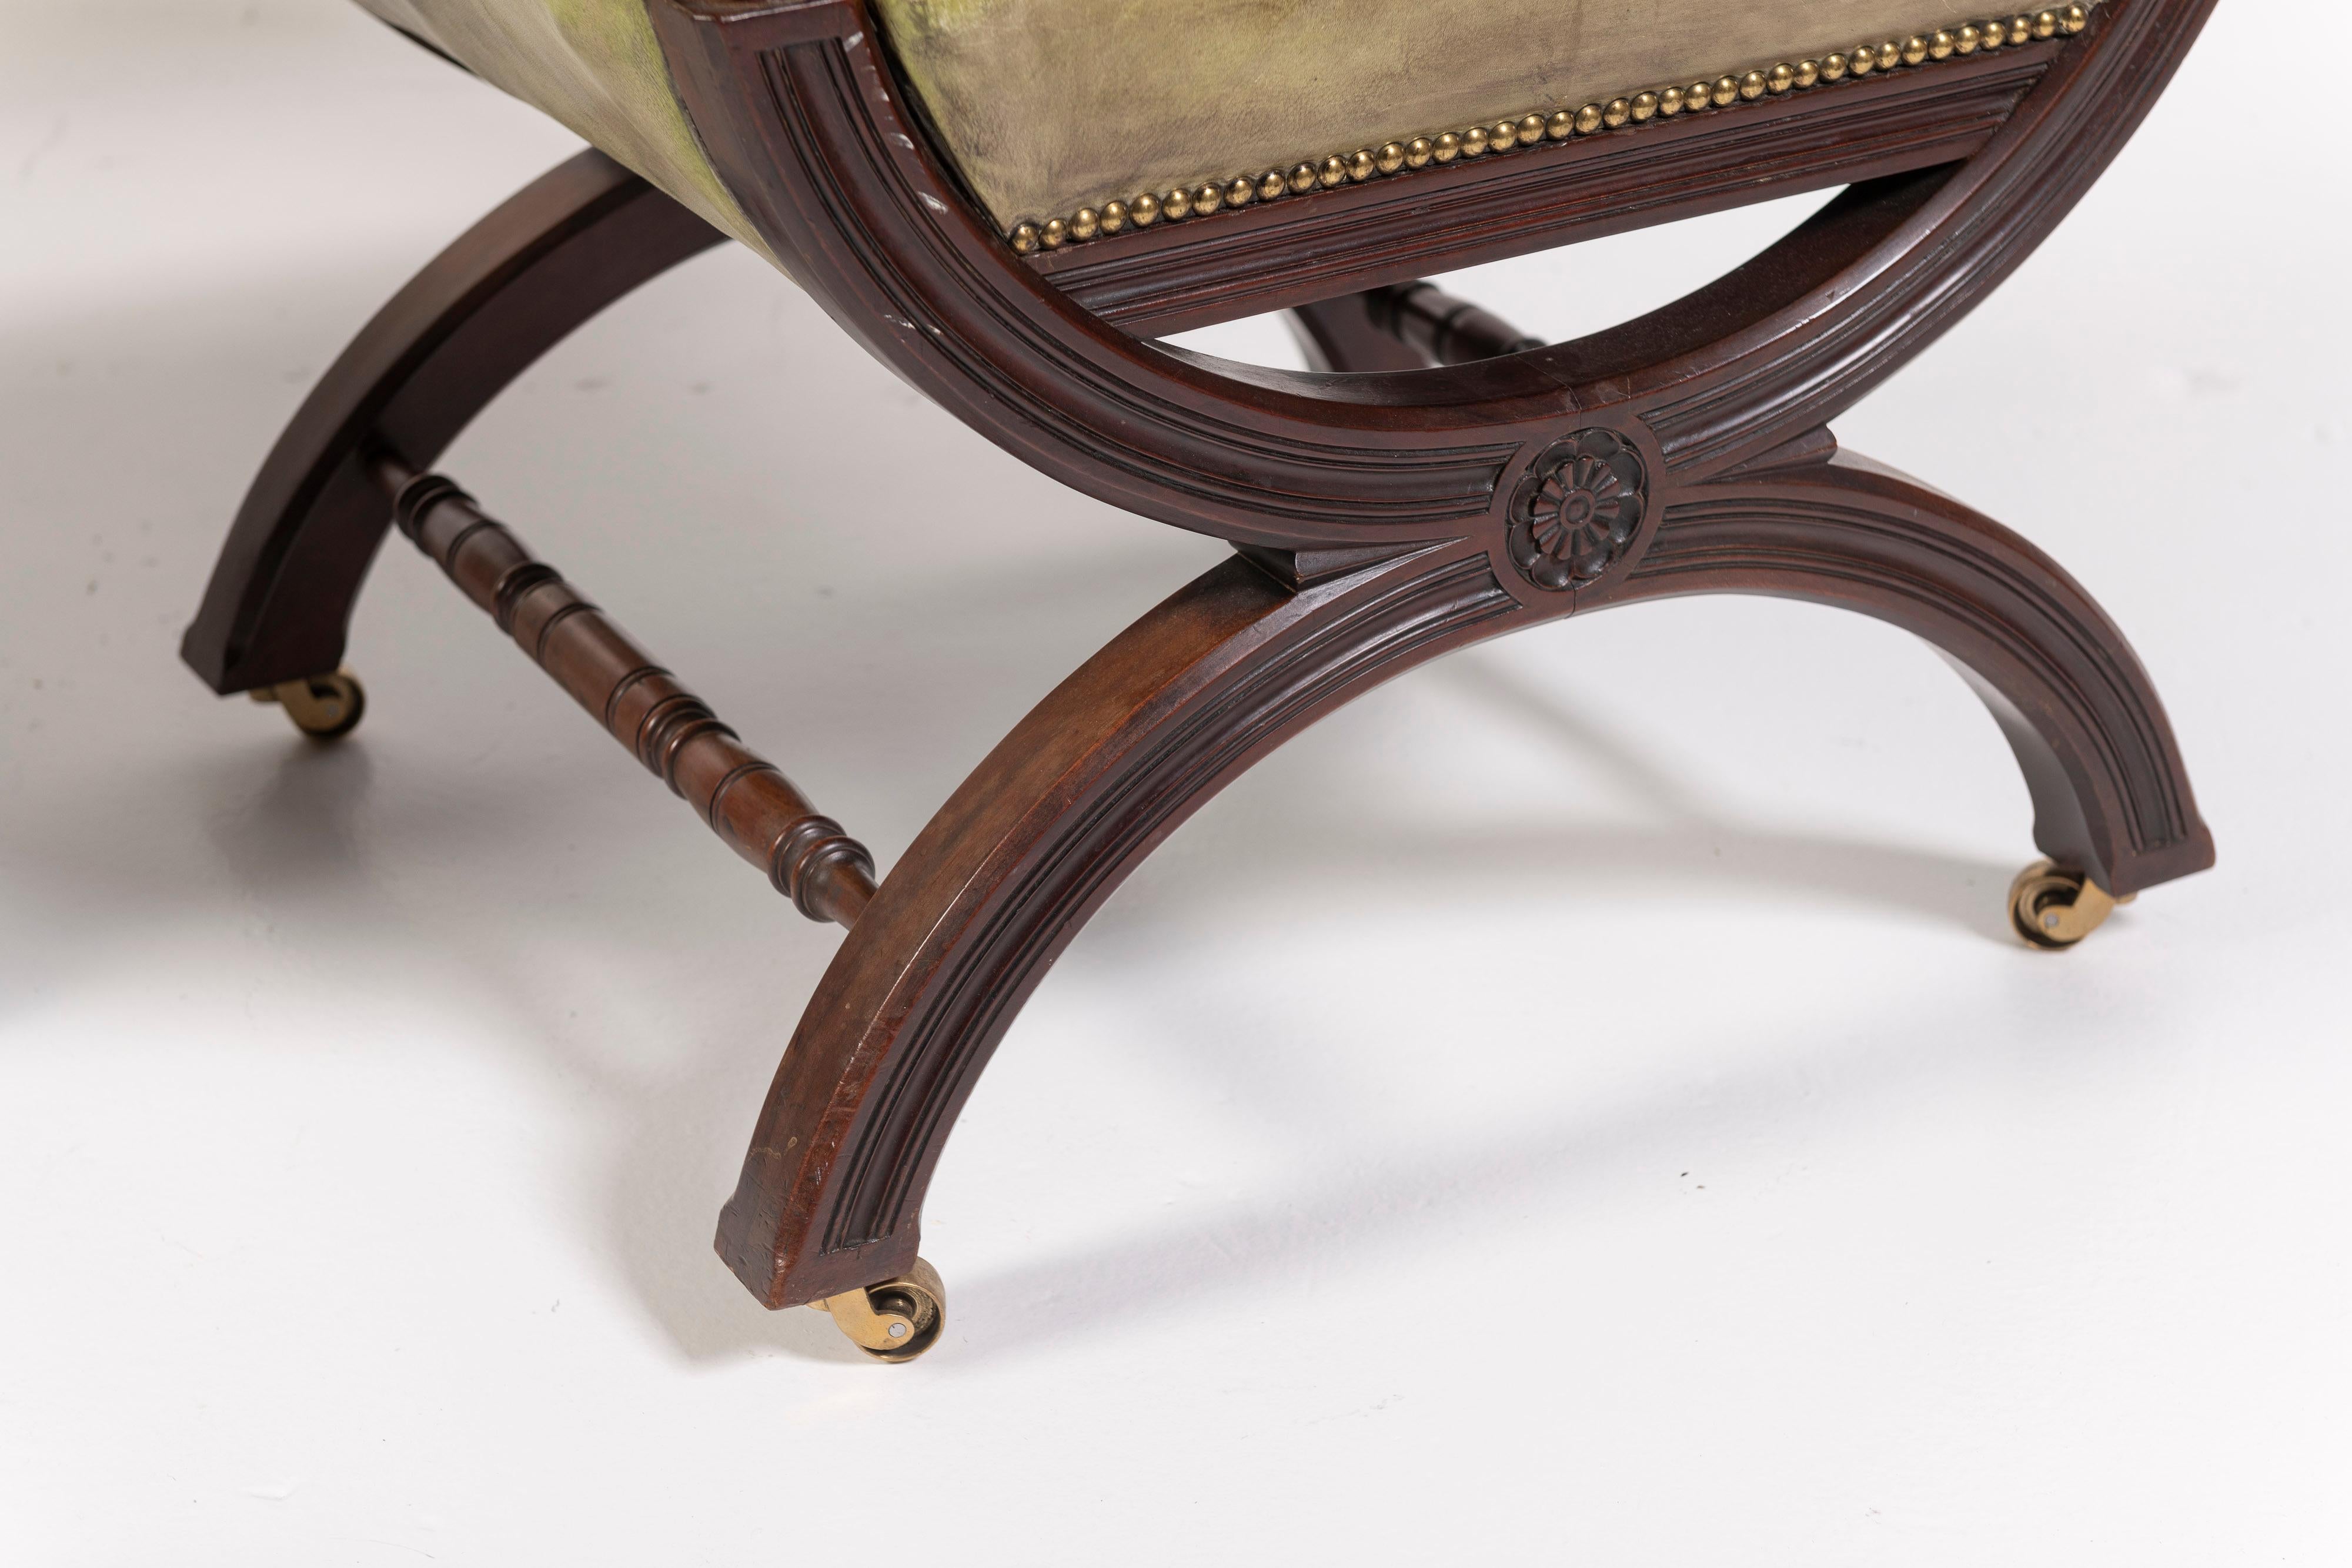 Cette fantastique paire de fauteuils anglais du XIXe siècle, avec une variante du design en X, est fabriquée en acajou et recouverte d'un cuir patiné vert olive. Les pieds sculptés, les clous décoratifs en laiton posés à la main et les accoudoirs